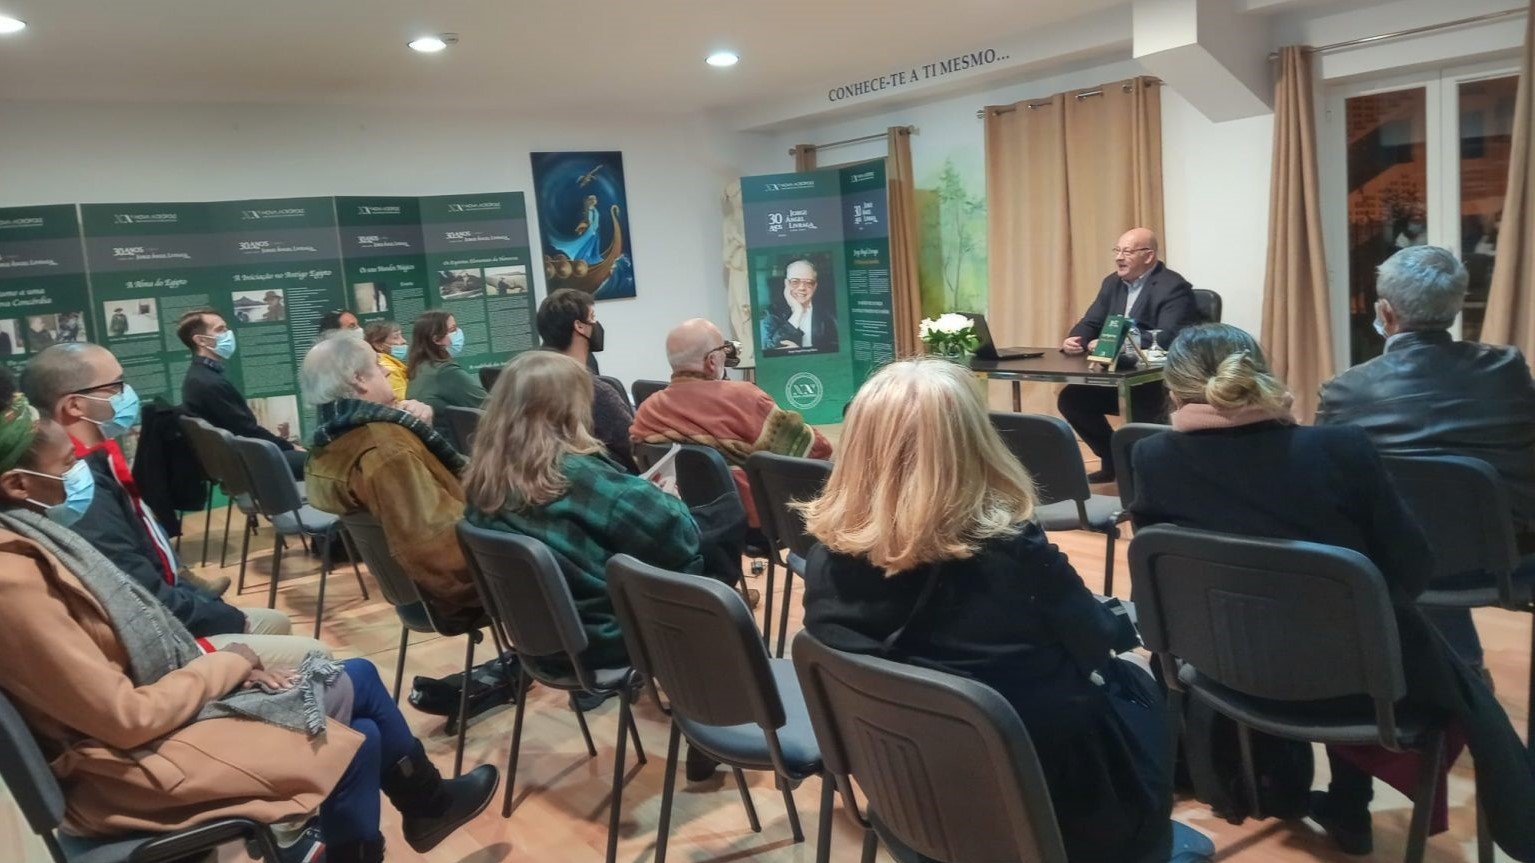 Exposition et conférence: "Jorge Angel Livraga, le philosophe de Concordia" (Lisbonne, Portugal)